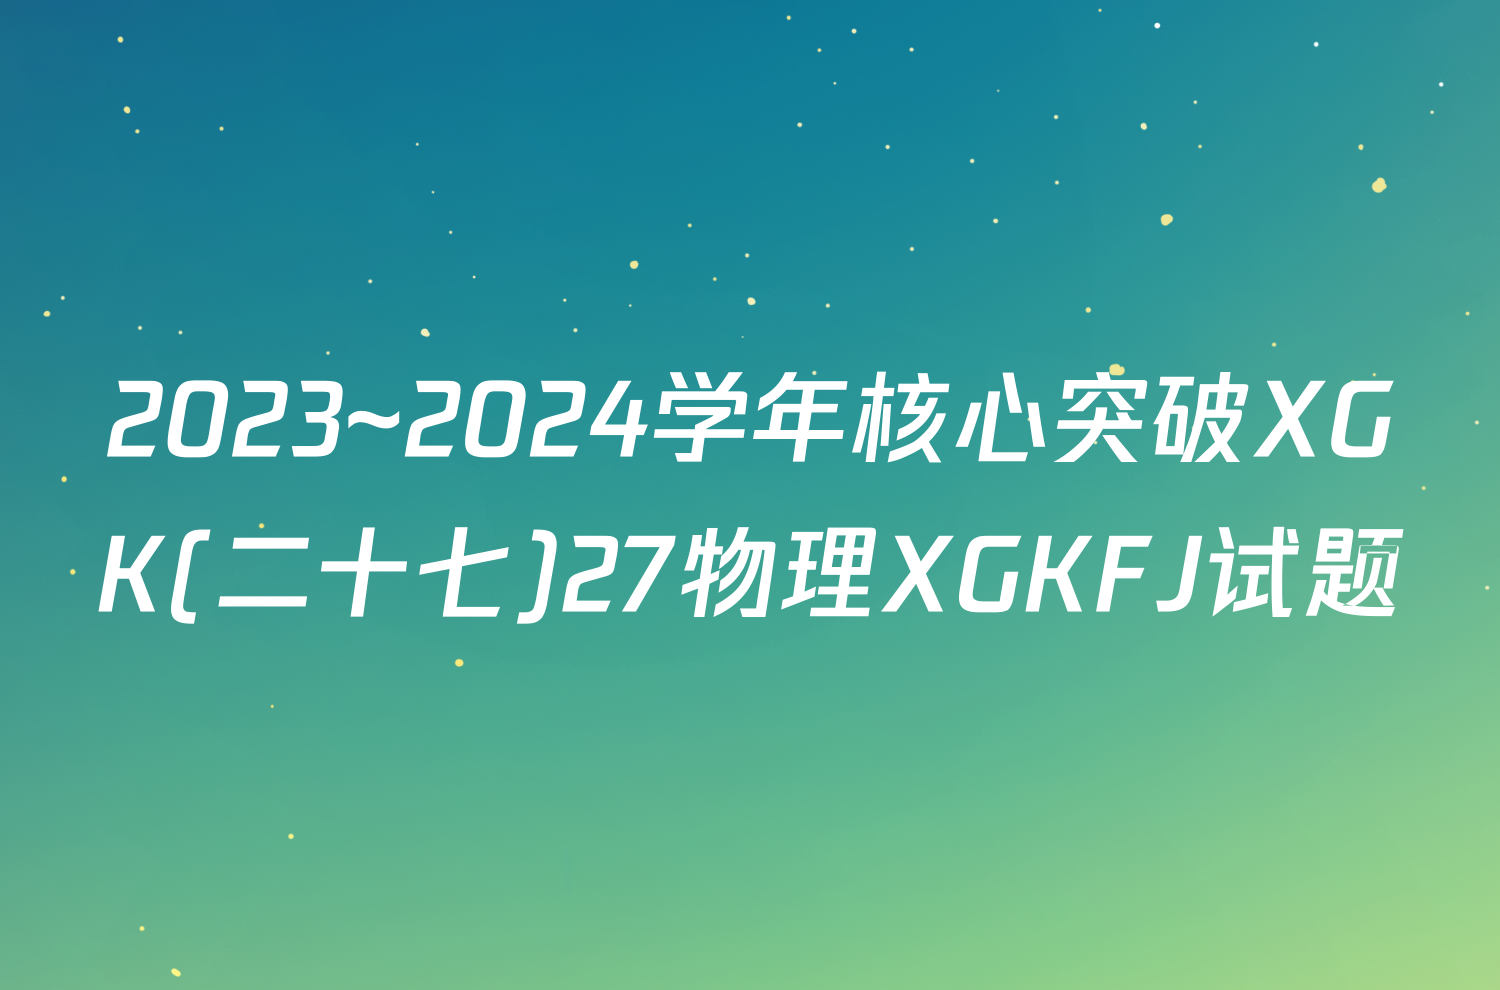 2023~2024学年核心突破XGK(二十七)27物理XGKFJ试题